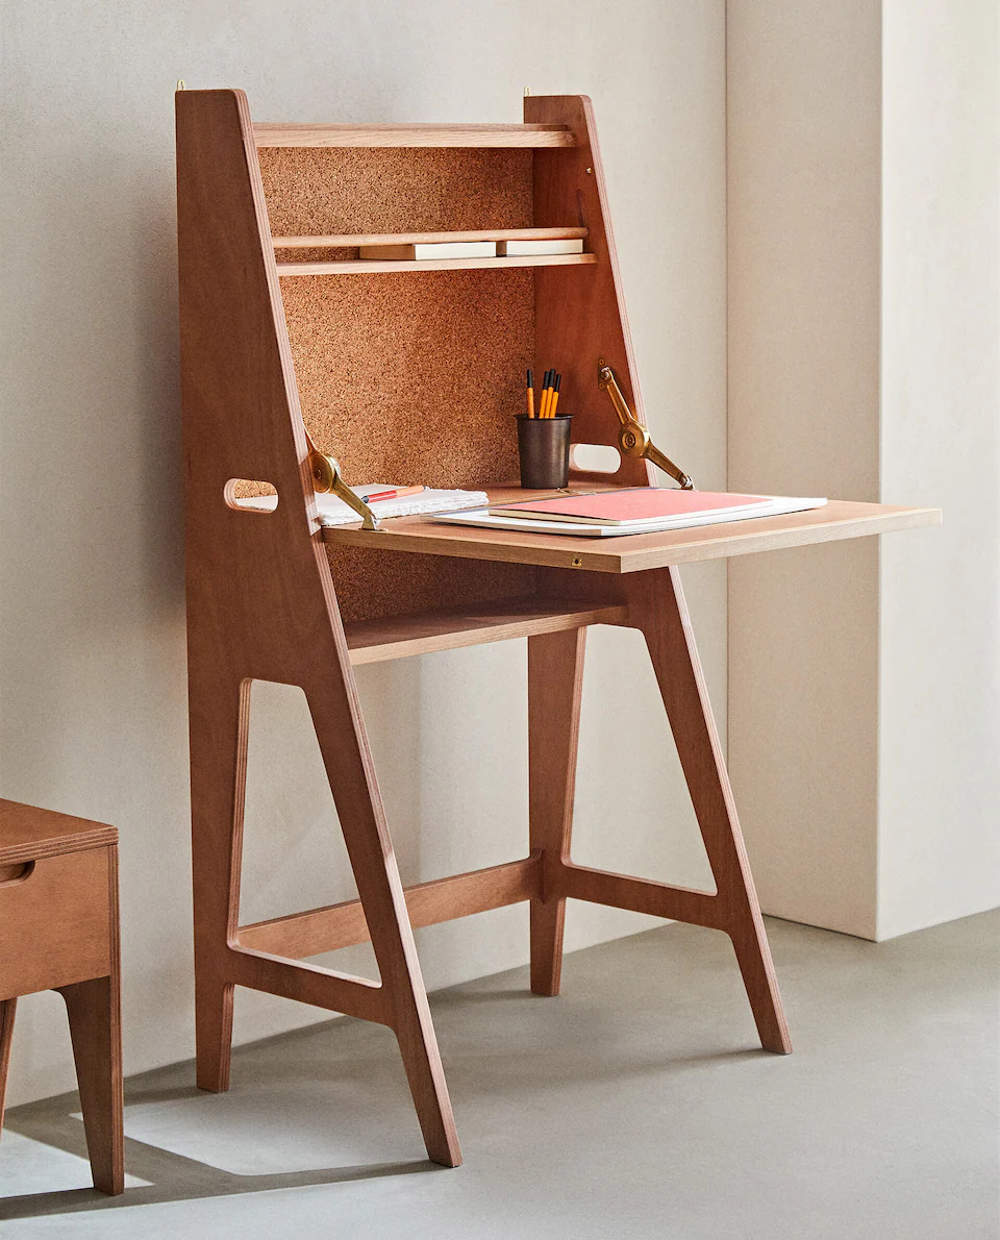 Un escritorio de madera para sus jornadas de estudio